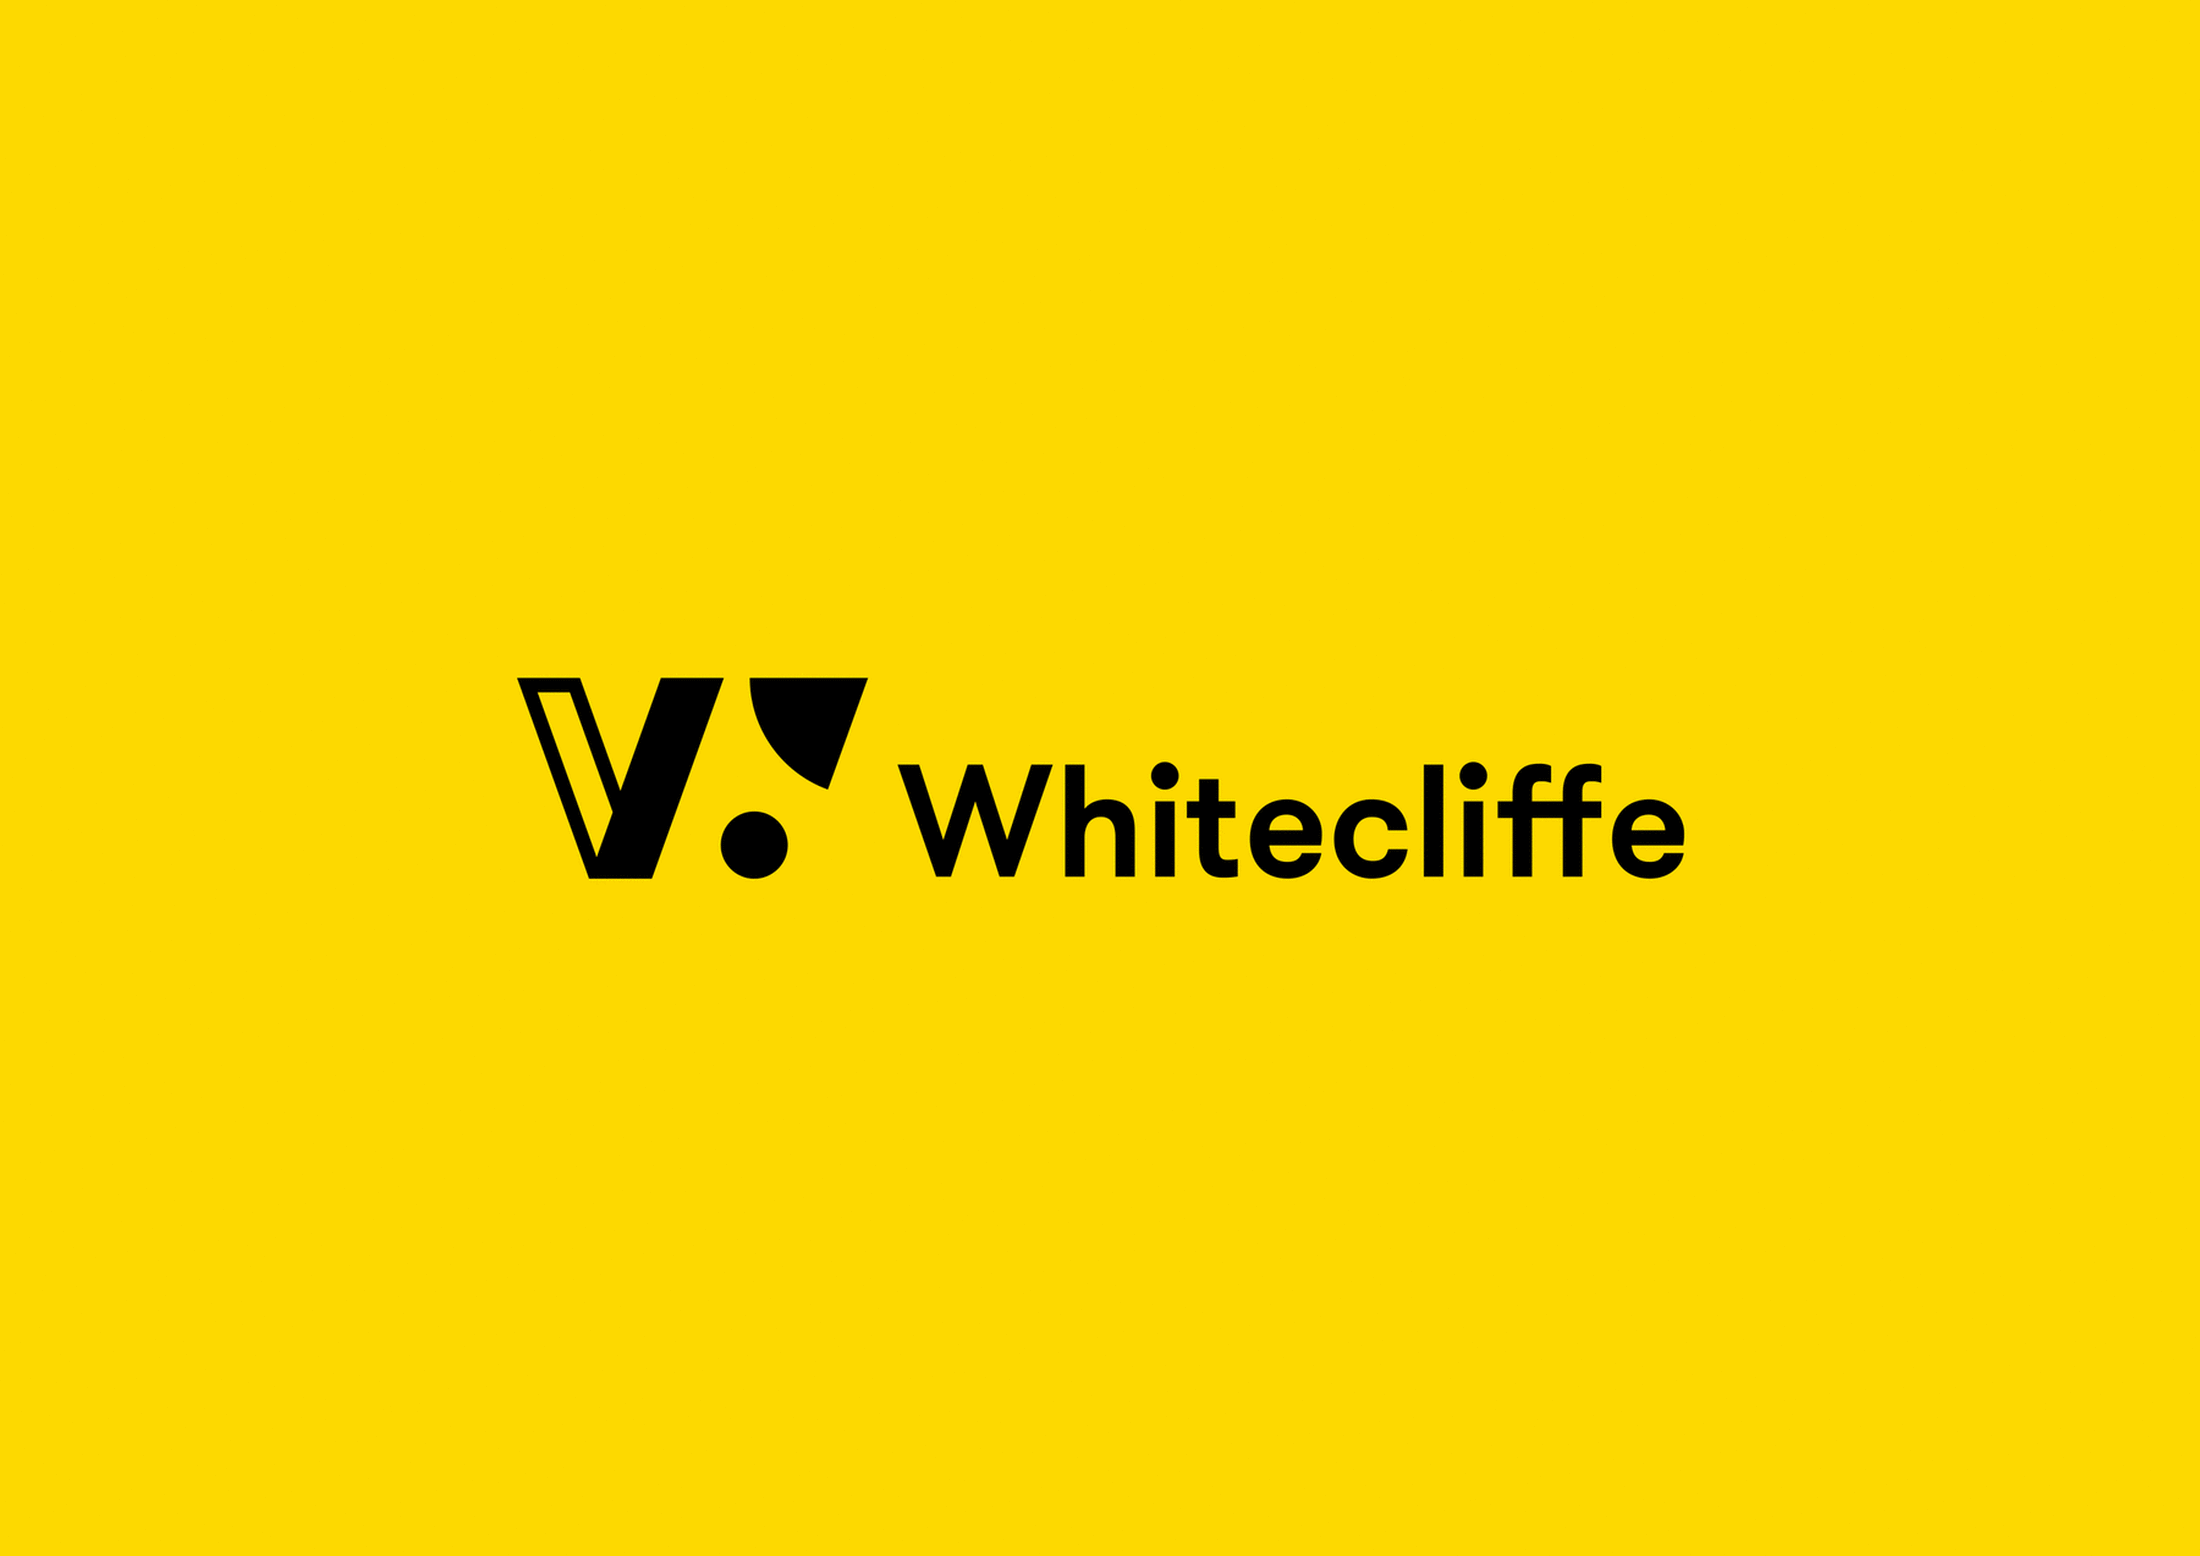 Whitecliffe brand